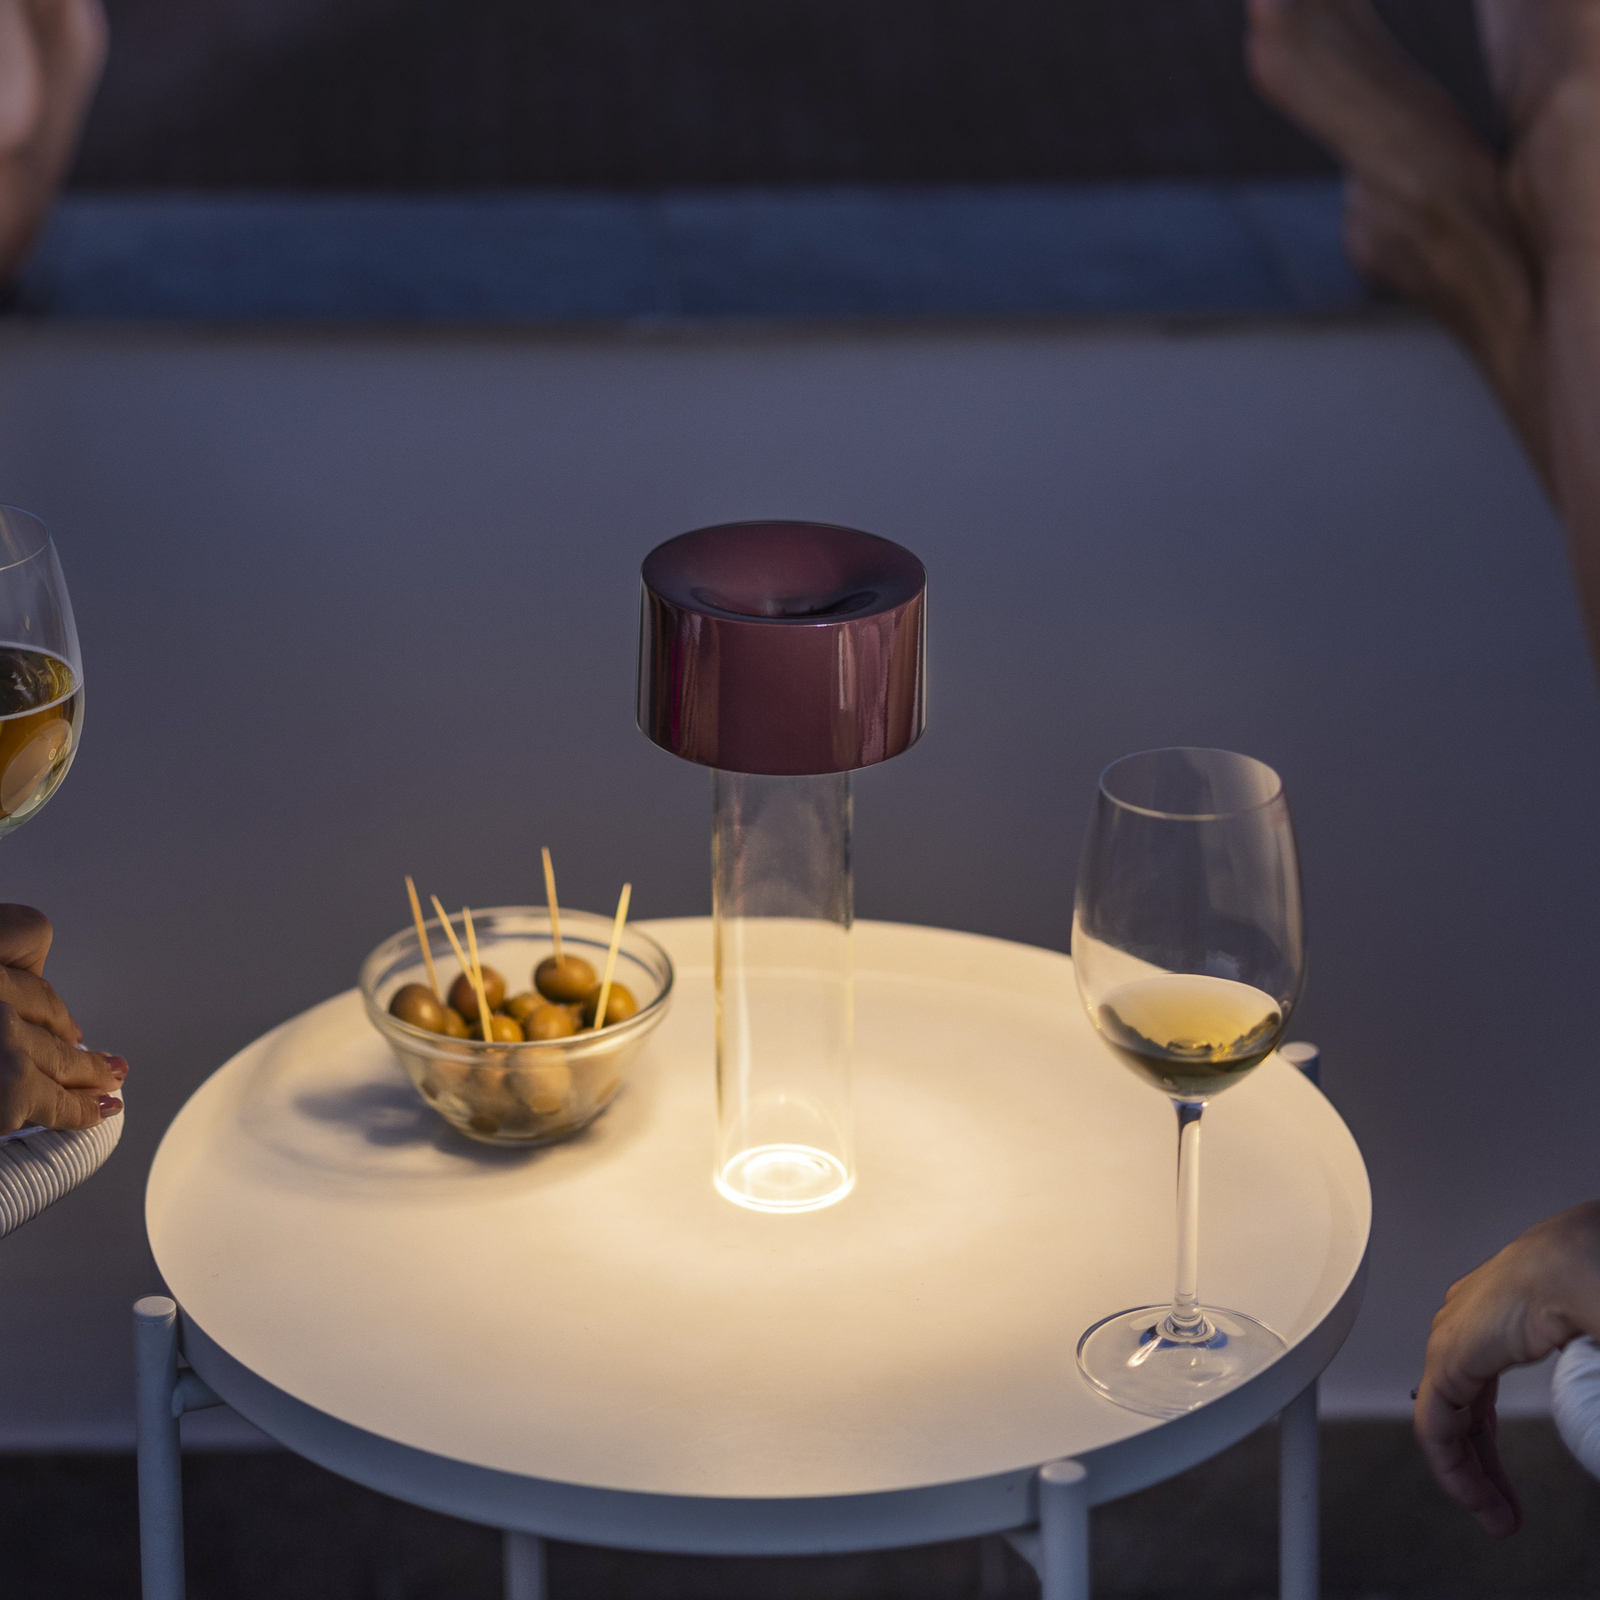 Nabíjecí stolní lampa Foscarini LED Fleur, vínově červená